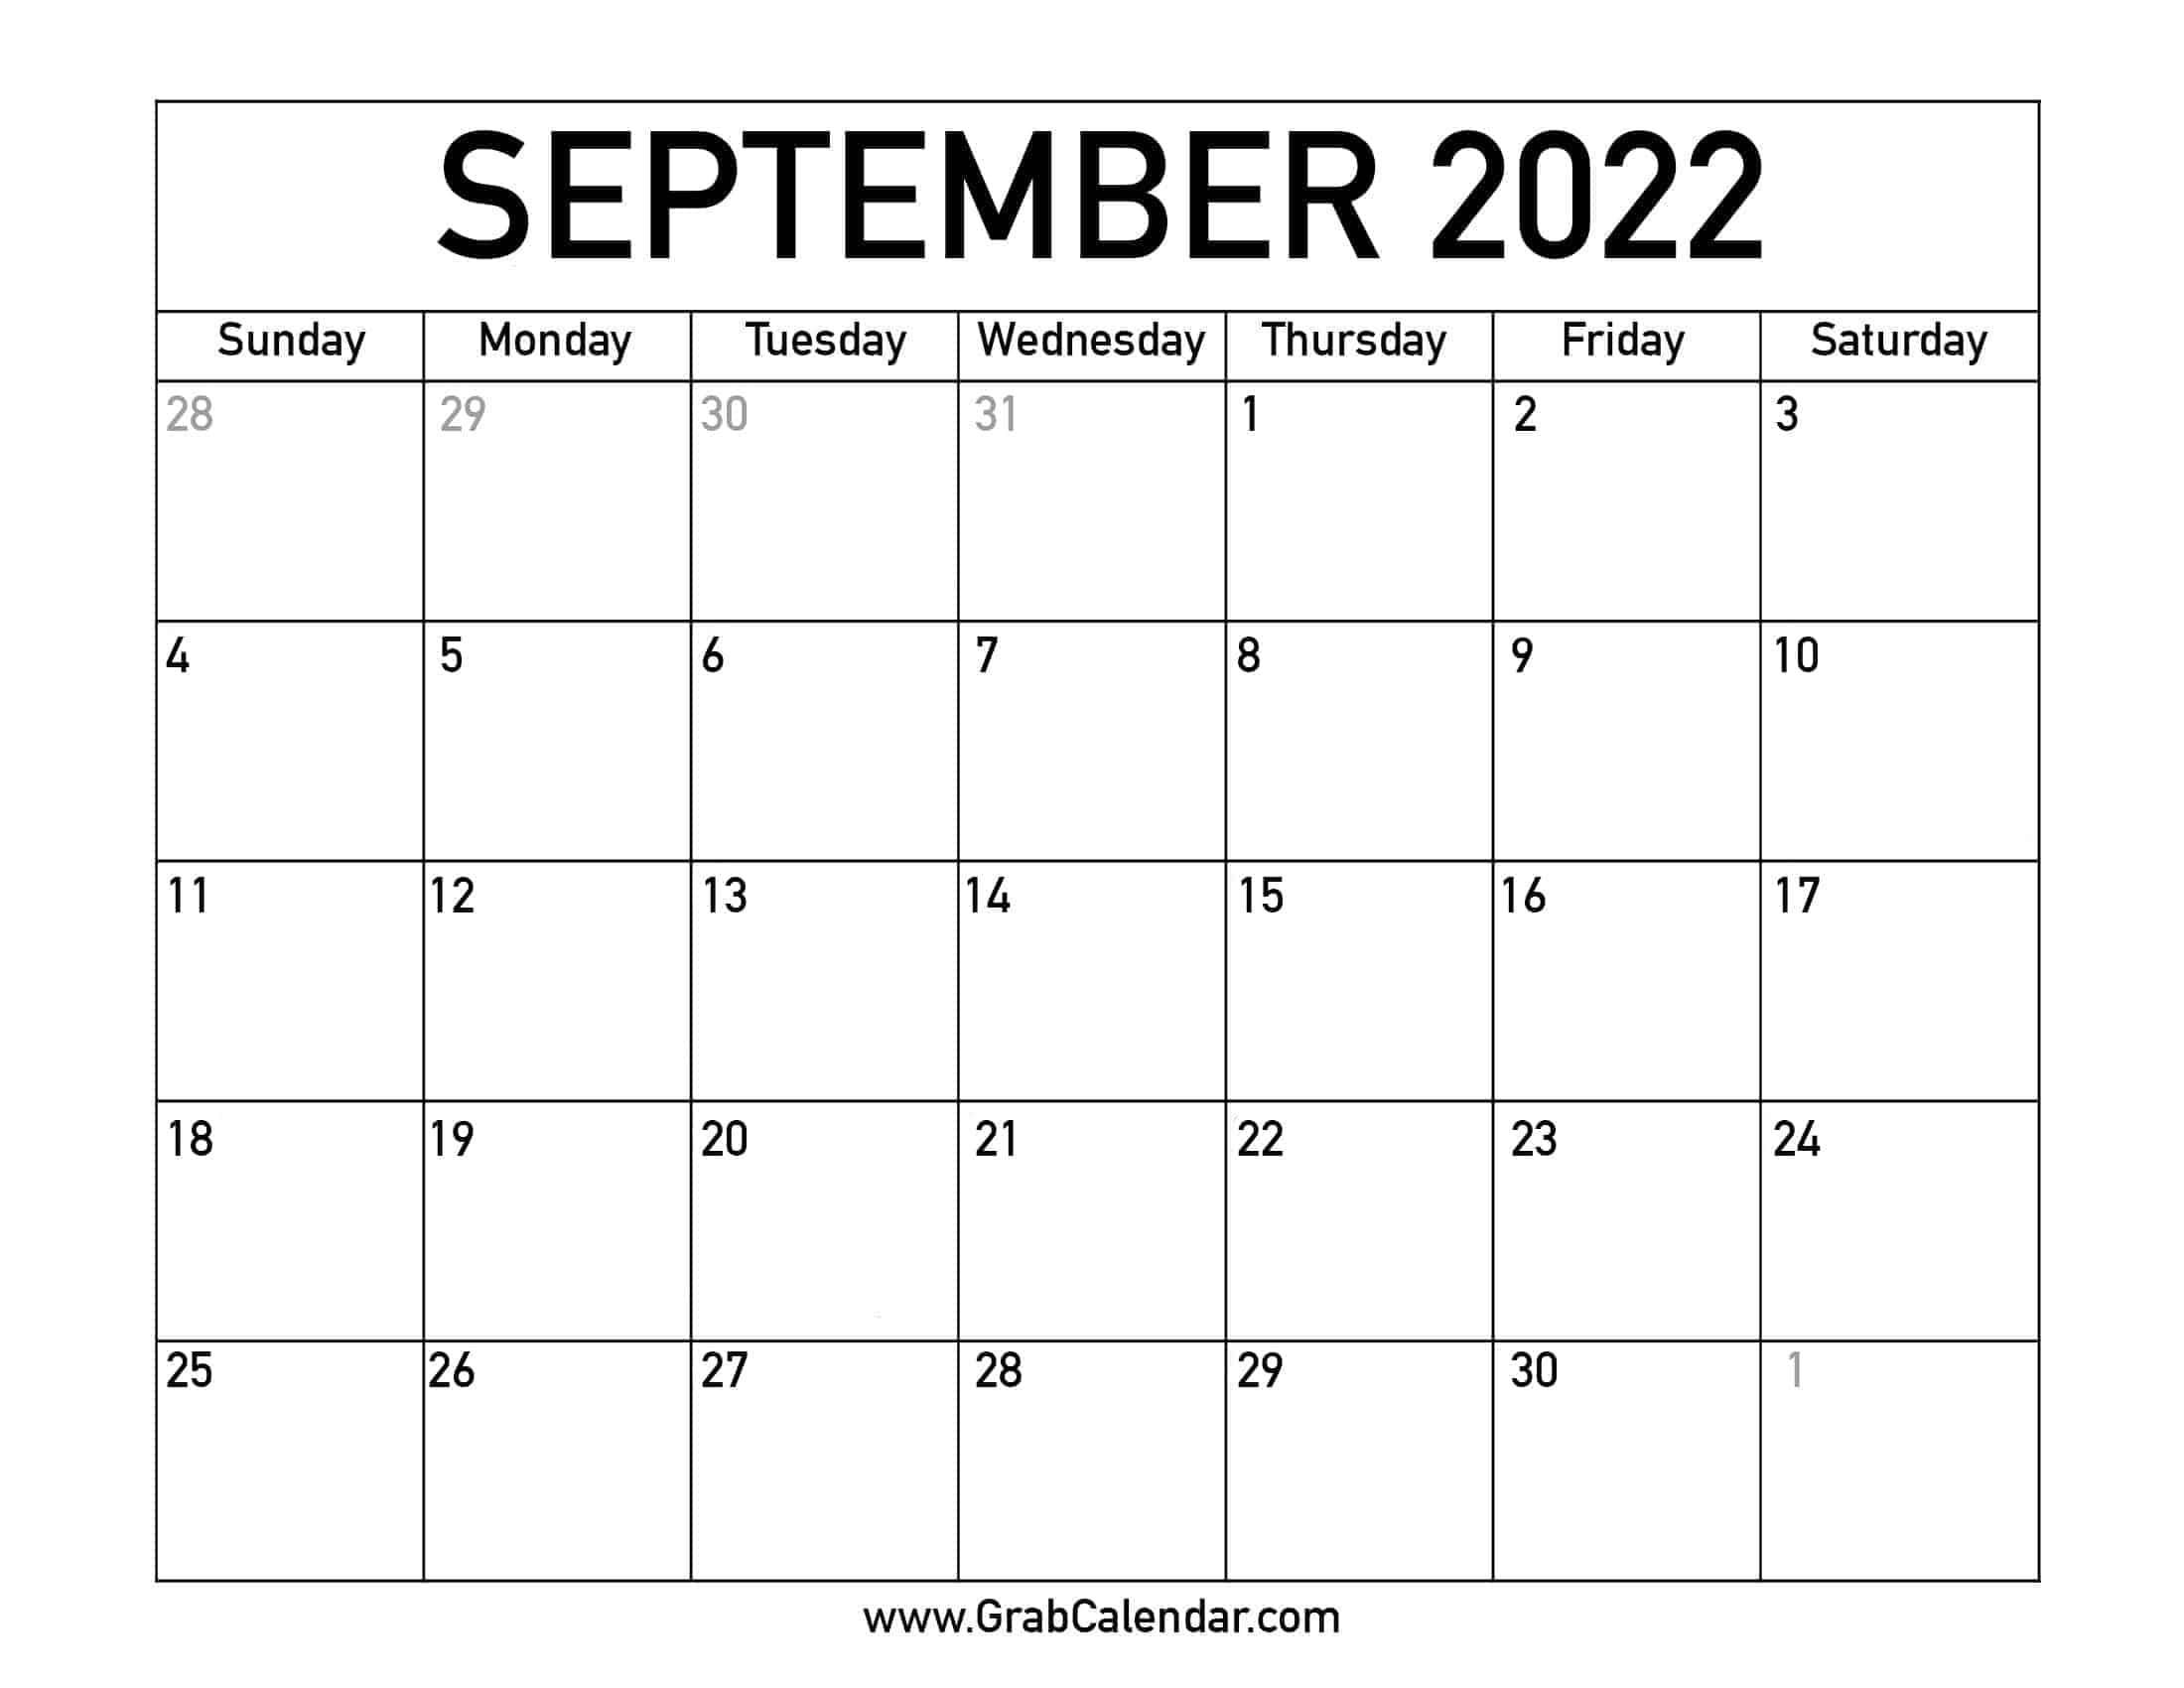 September 2022 Calendar Printable September 2022 Calendar